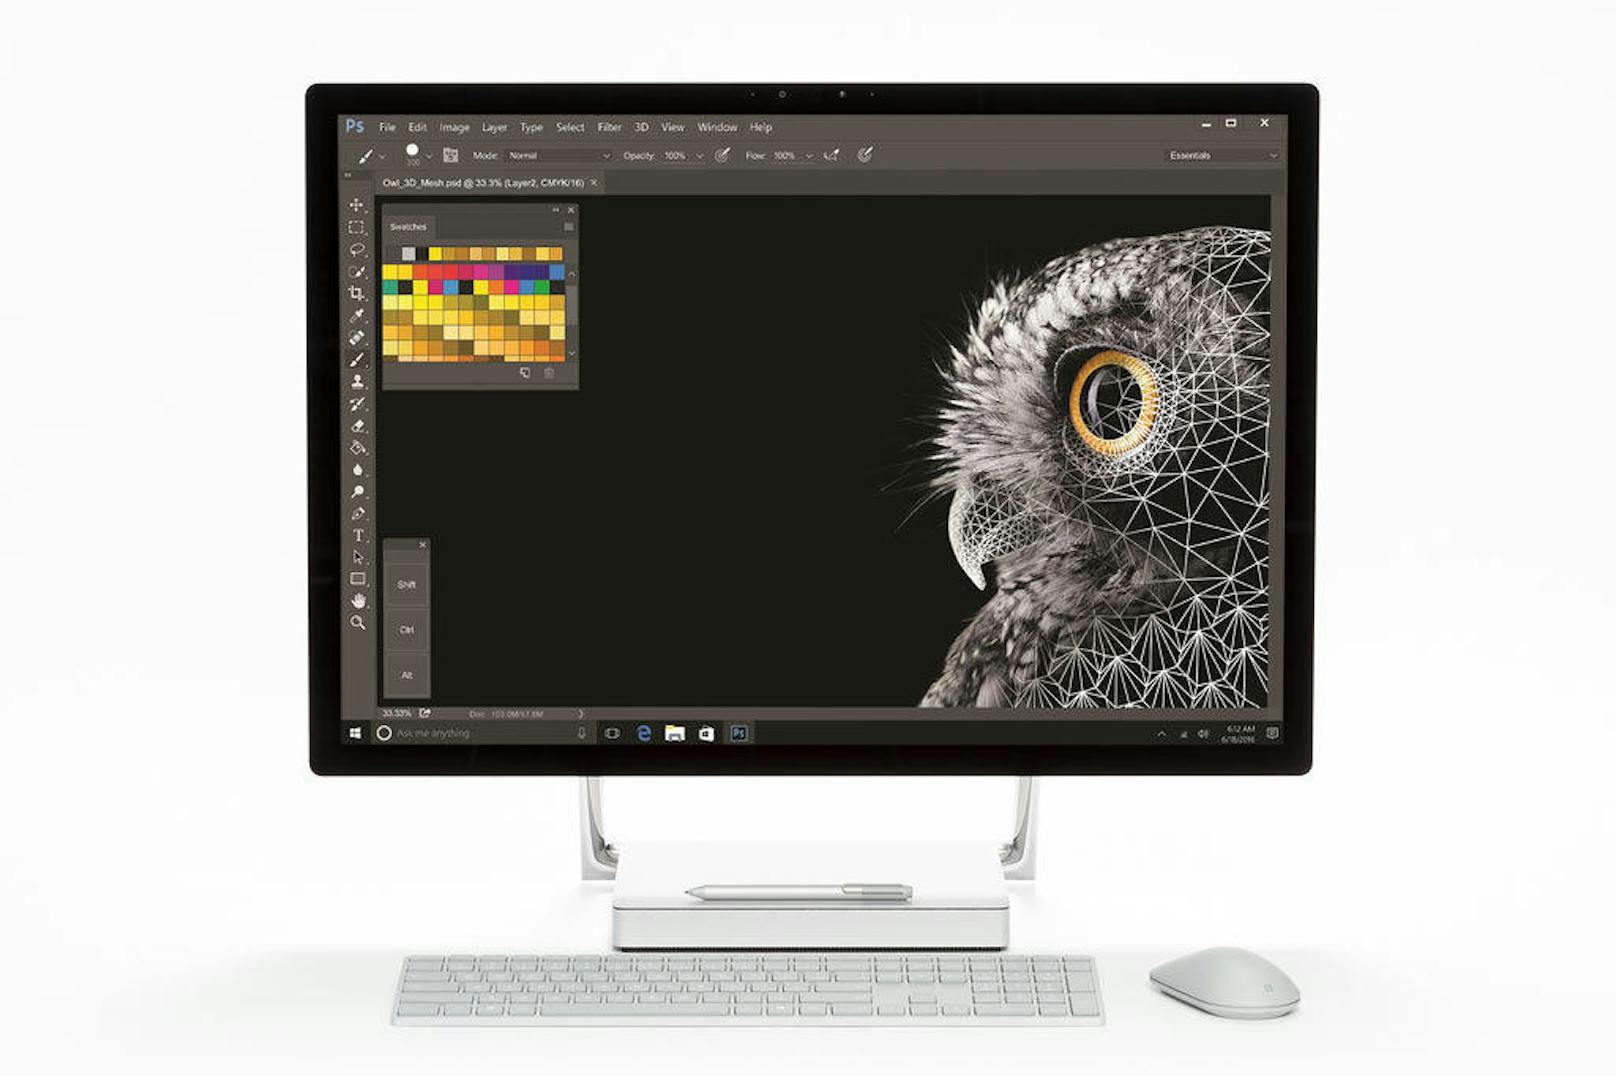 <b>Surface Studio:</b> Mit Surface Studio bietet Microsoft einen Design-Ansatz für die kreative Arbeit am Schreibtisch. Es kommt mit einem 28 Zoll 4,5K LCD-Monitor (13,5 Millionen Pixel) mit Touch-Funktion. Ein "Zero Gravity"-Scharnier bringt den Monitor vom Desktop- in den "Studio"-Modus mit einem identischen Winkel von 20 Grad wie auf einem Zeichenbrett. Surface Studio ist in drei verschiedenen Modell-Varianten ab einem Preis von 3.549 Euro zu haben. <a href="https://www.heute.at/digital/multimedia/story/Surface-Pro--Laptop-und-Studio-nun-in--sterreich-41182463">"Heute" titelte: Surface Pro, Laptop und Studio nun in Österreich</a>